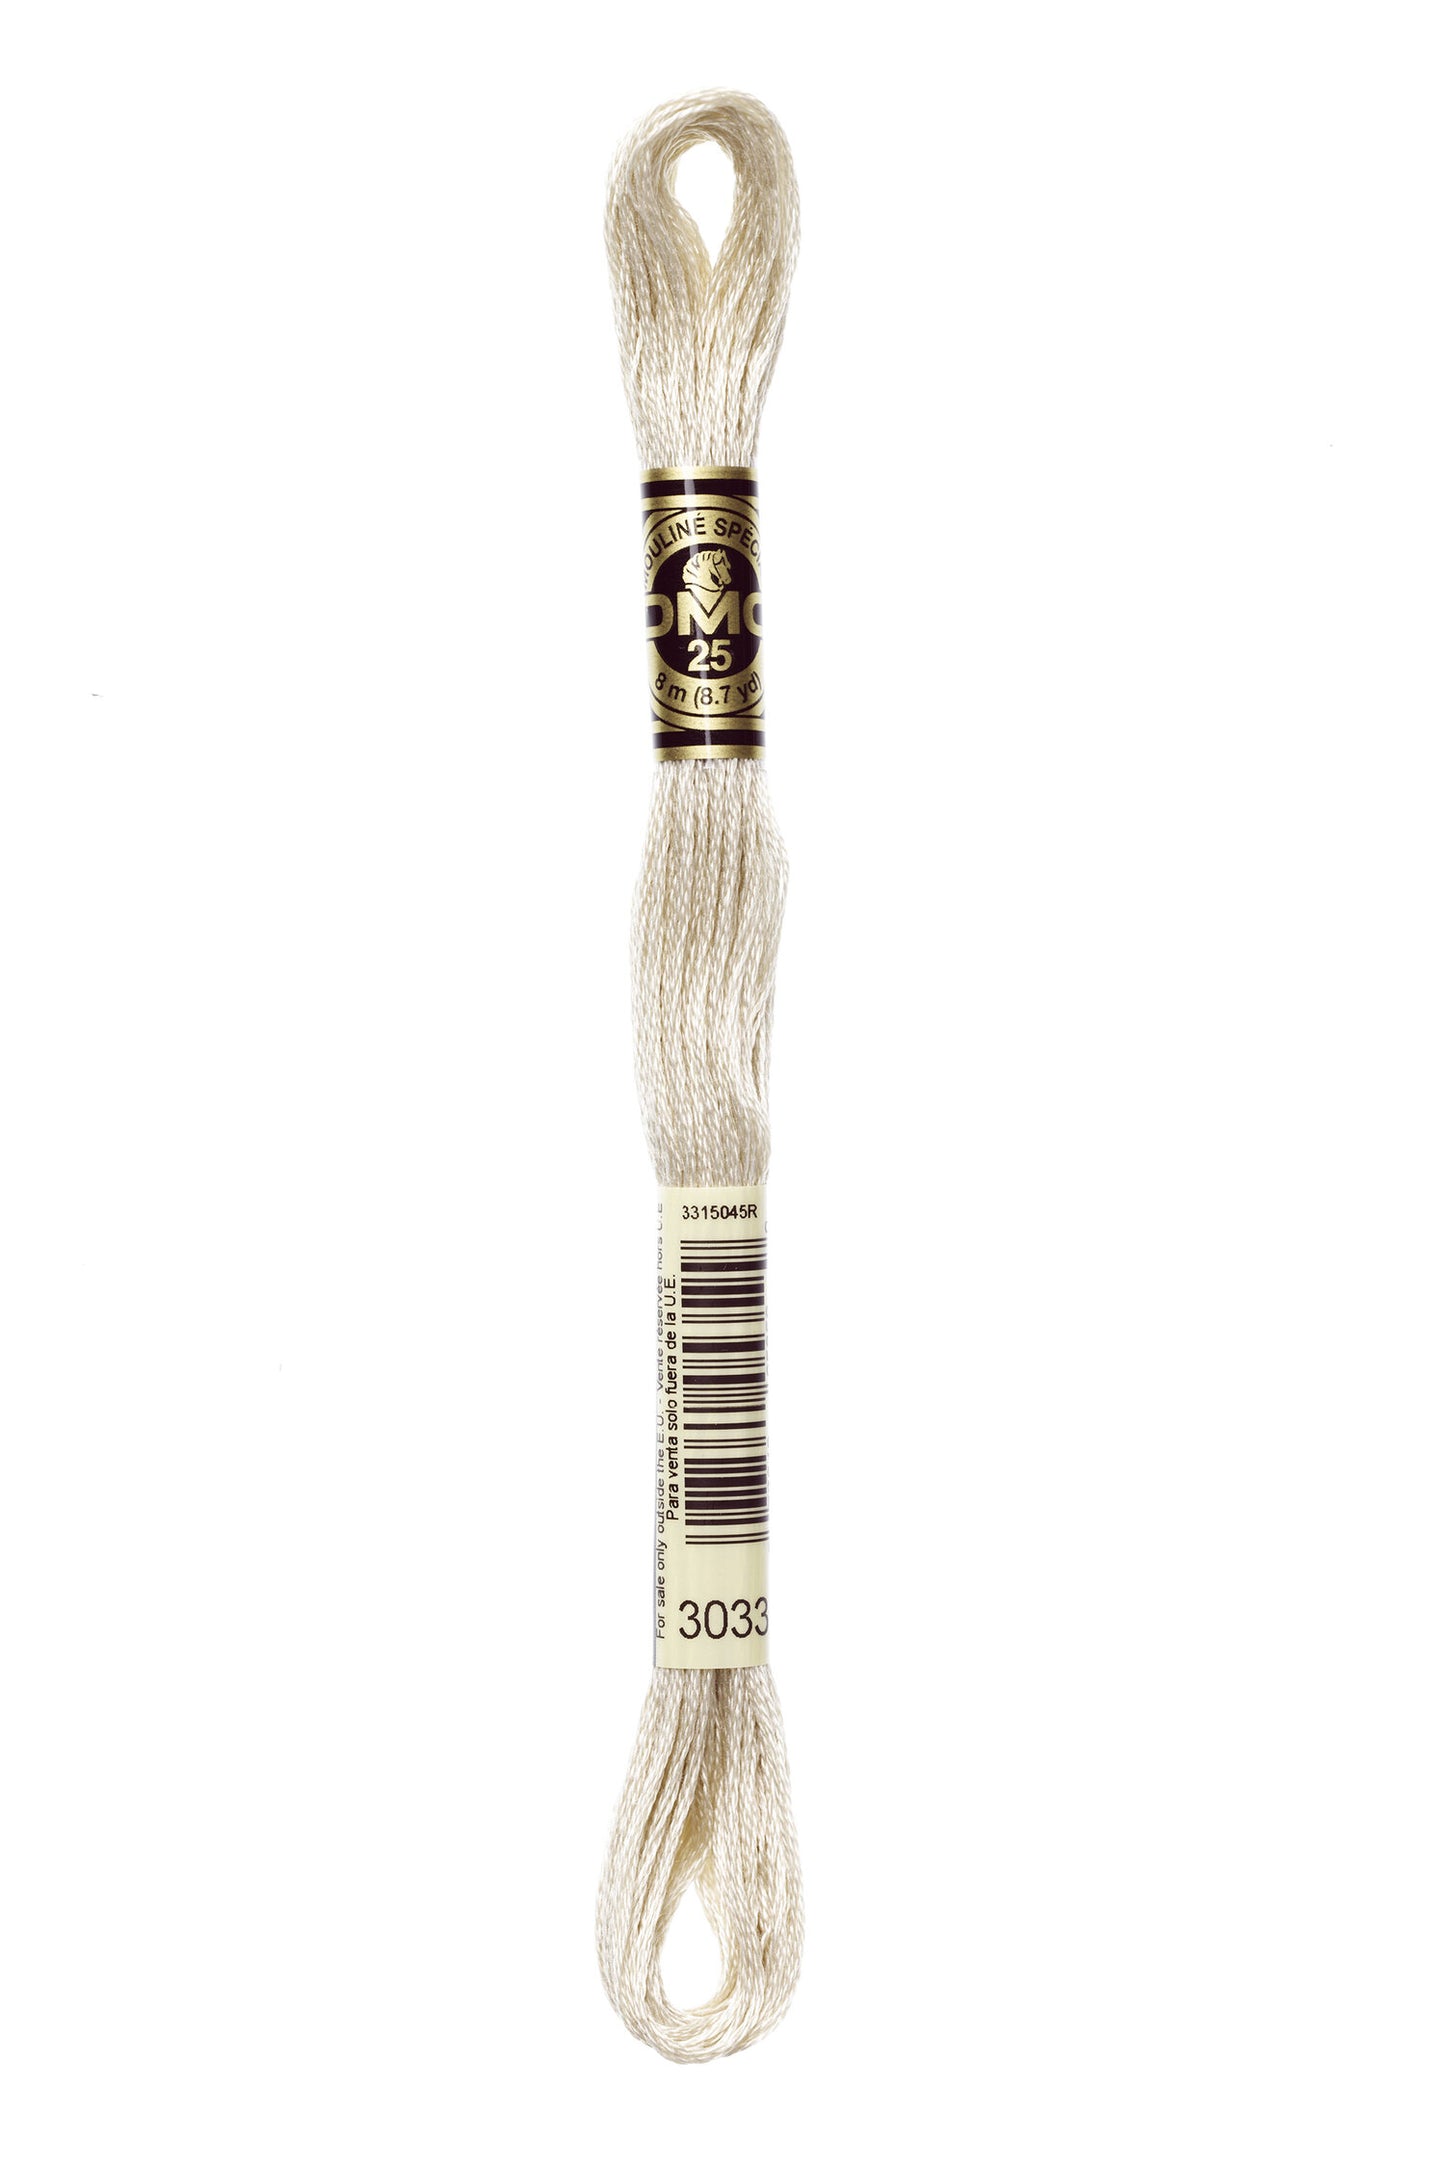 DMC 3033 - Mocha Brown - Very Light - DMC 6 Strand Embroidery Thread, Thread & Floss, Thread & Floss, The Crafty Grimalkin - A Cross Stitch Store